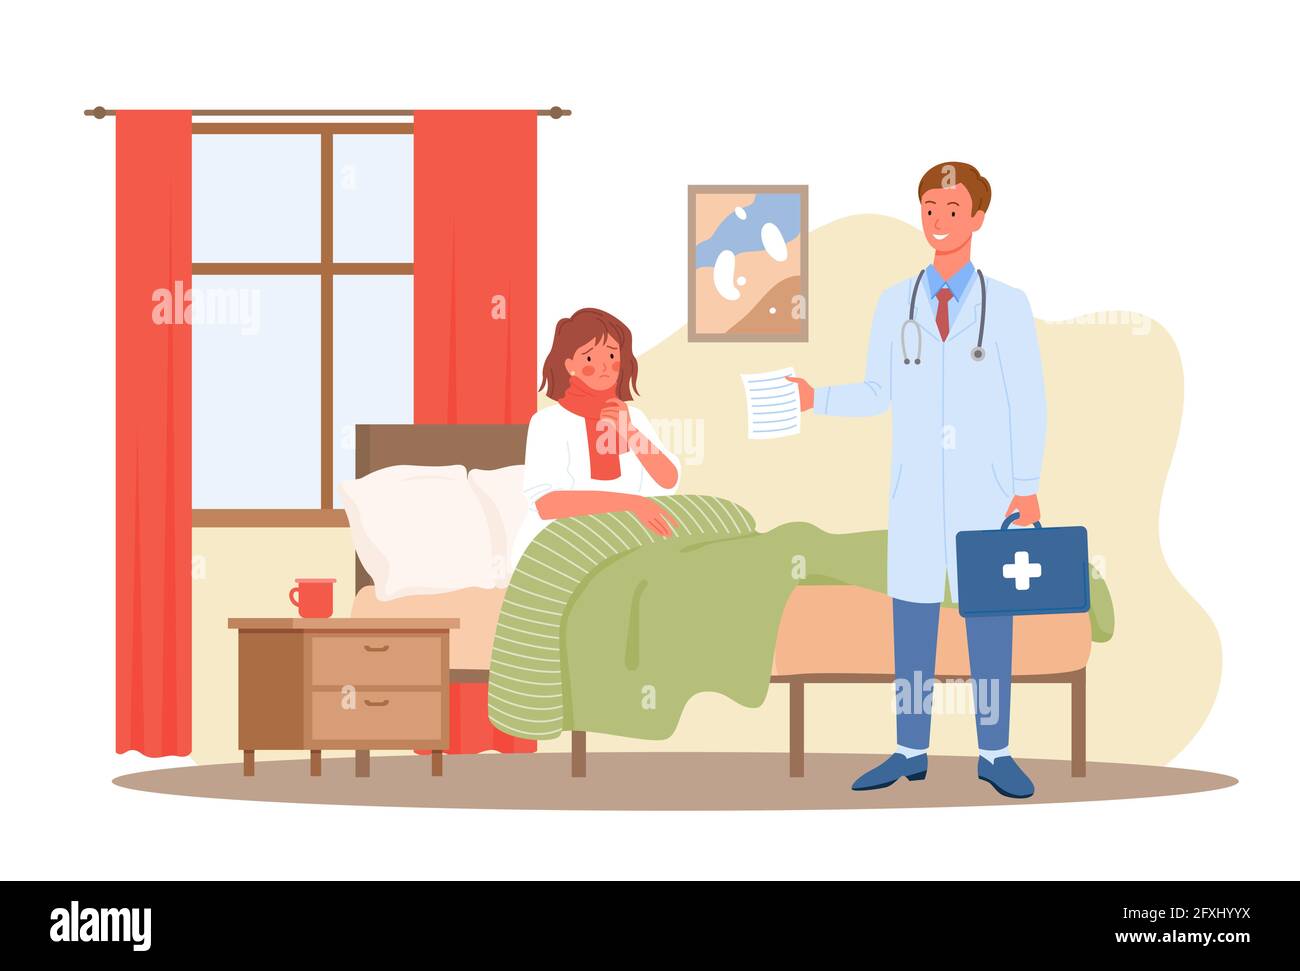 Arztbesuch, medizinisch-diagnostisches Versorgungskonzept mit kranken  Patienten im Bett Stock-Vektorgrafik - Alamy